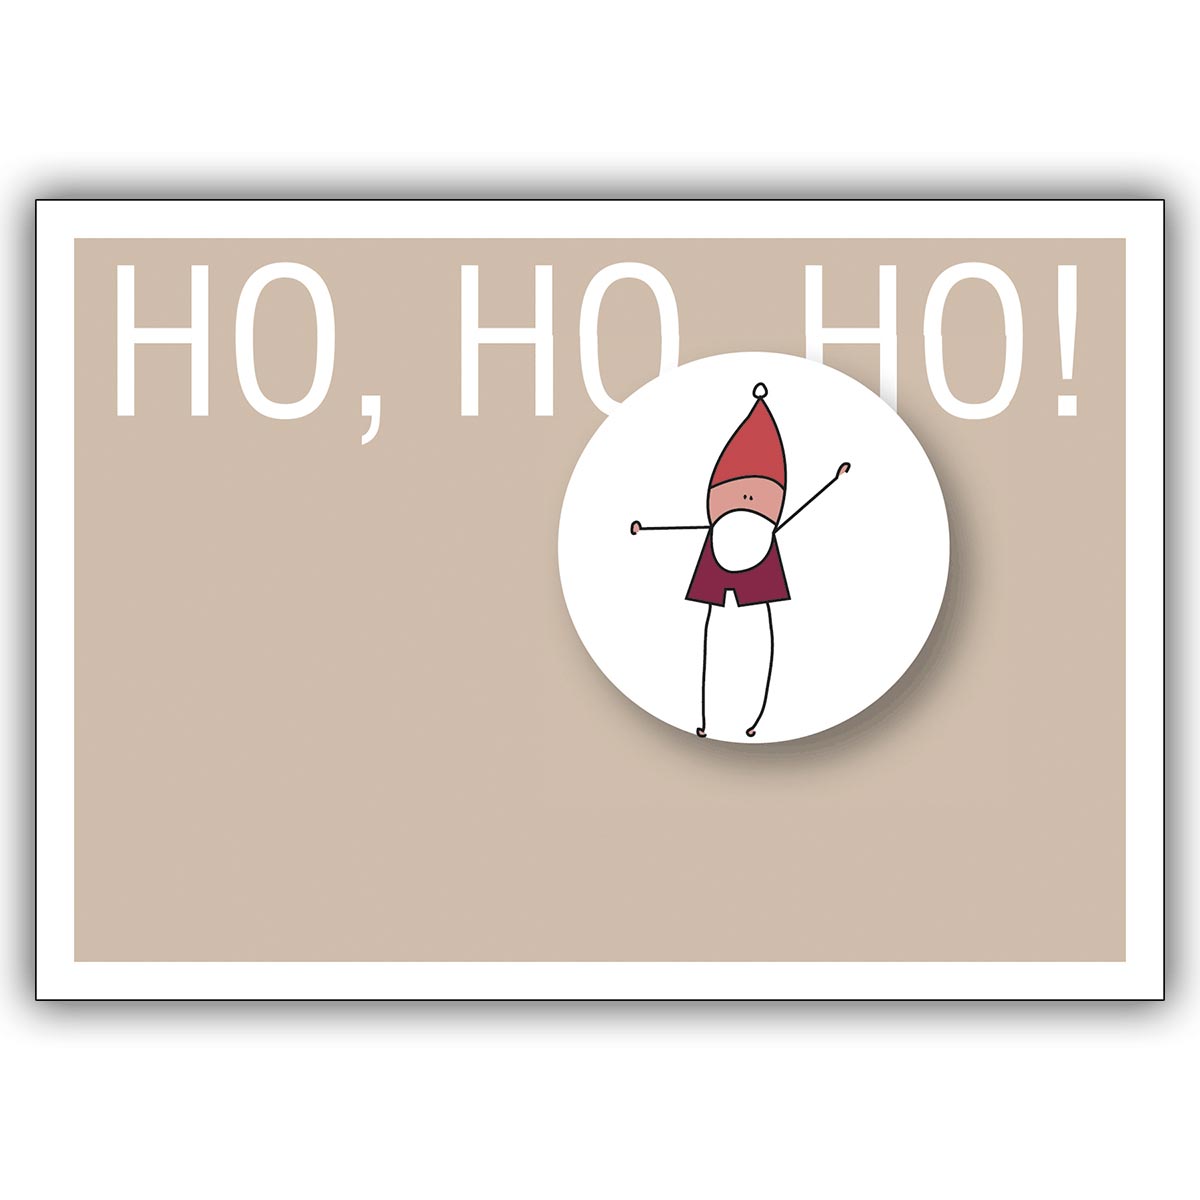 Komische Weihnachtskarte mit dem Weihnachtwichtel: Ho, ho, ho!